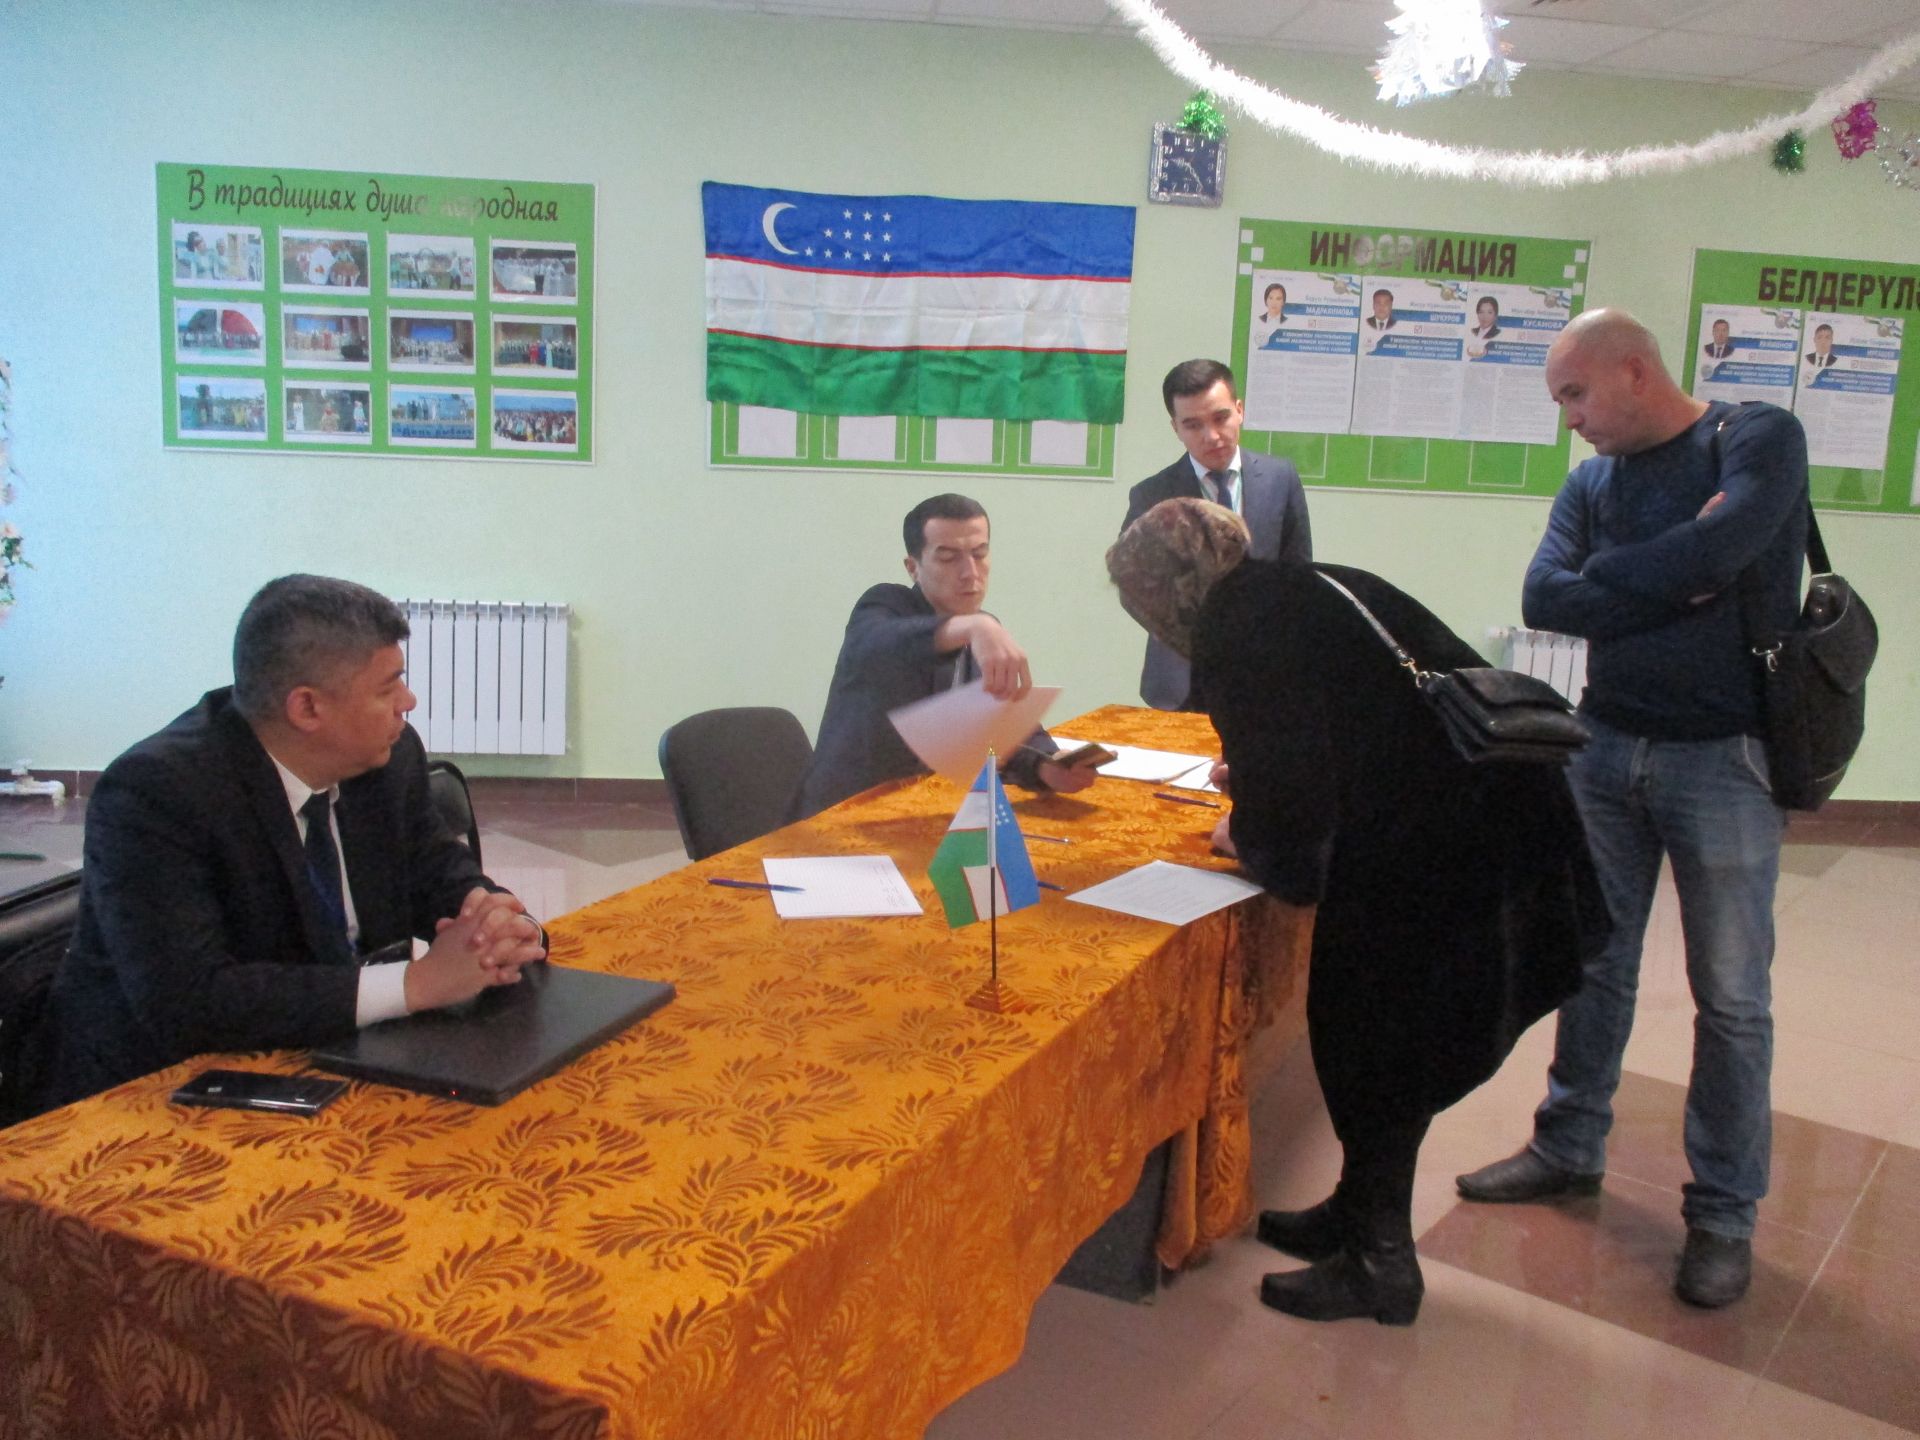 Граждане Узбекистана поблагодарили за организацию досрочного голосования в Рыбной Слободе на высоком уровне